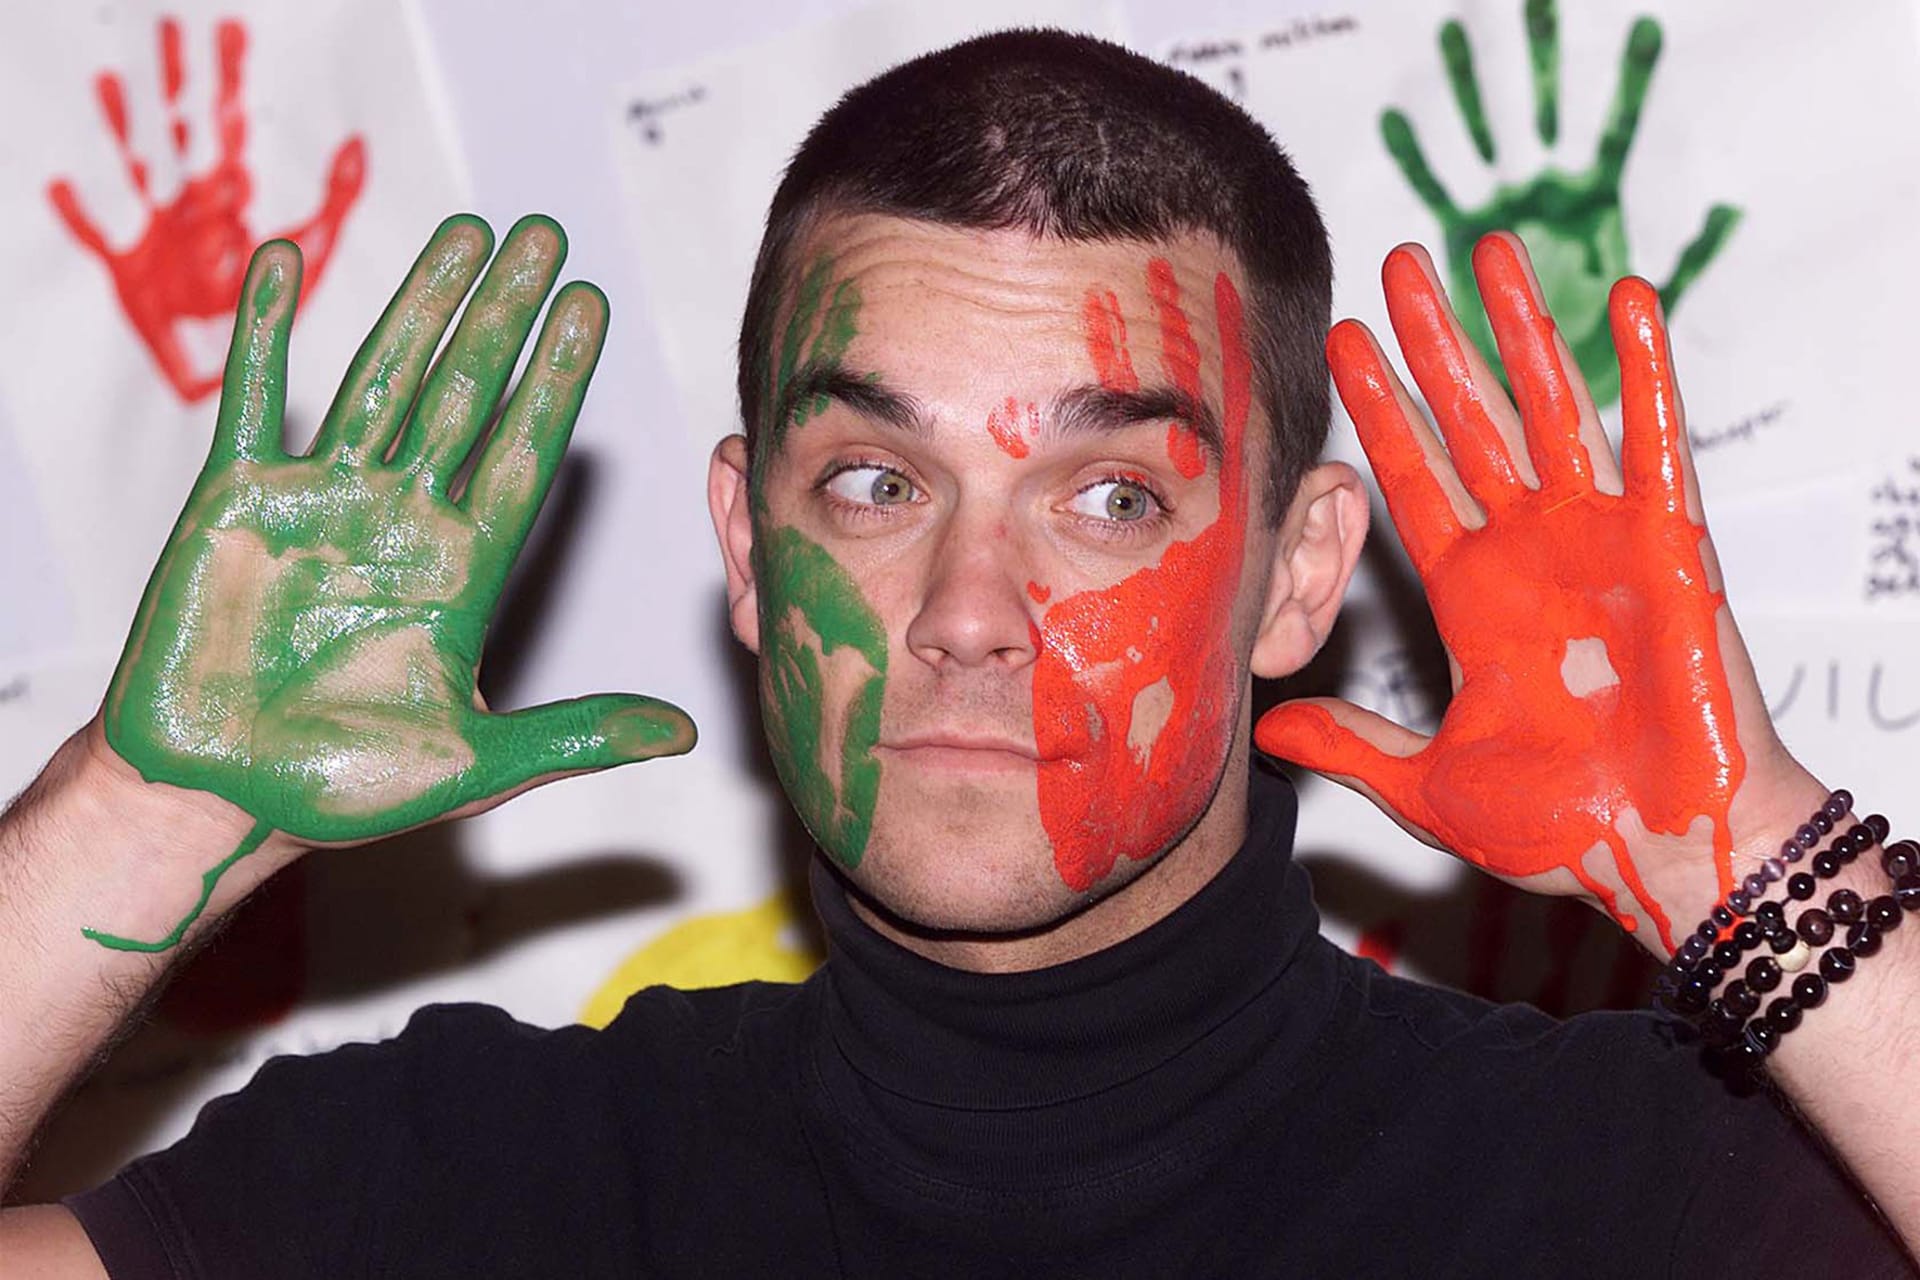 Robbiemu Williamsovi se dostane pocty v podobě čtyřdílného seriálu.